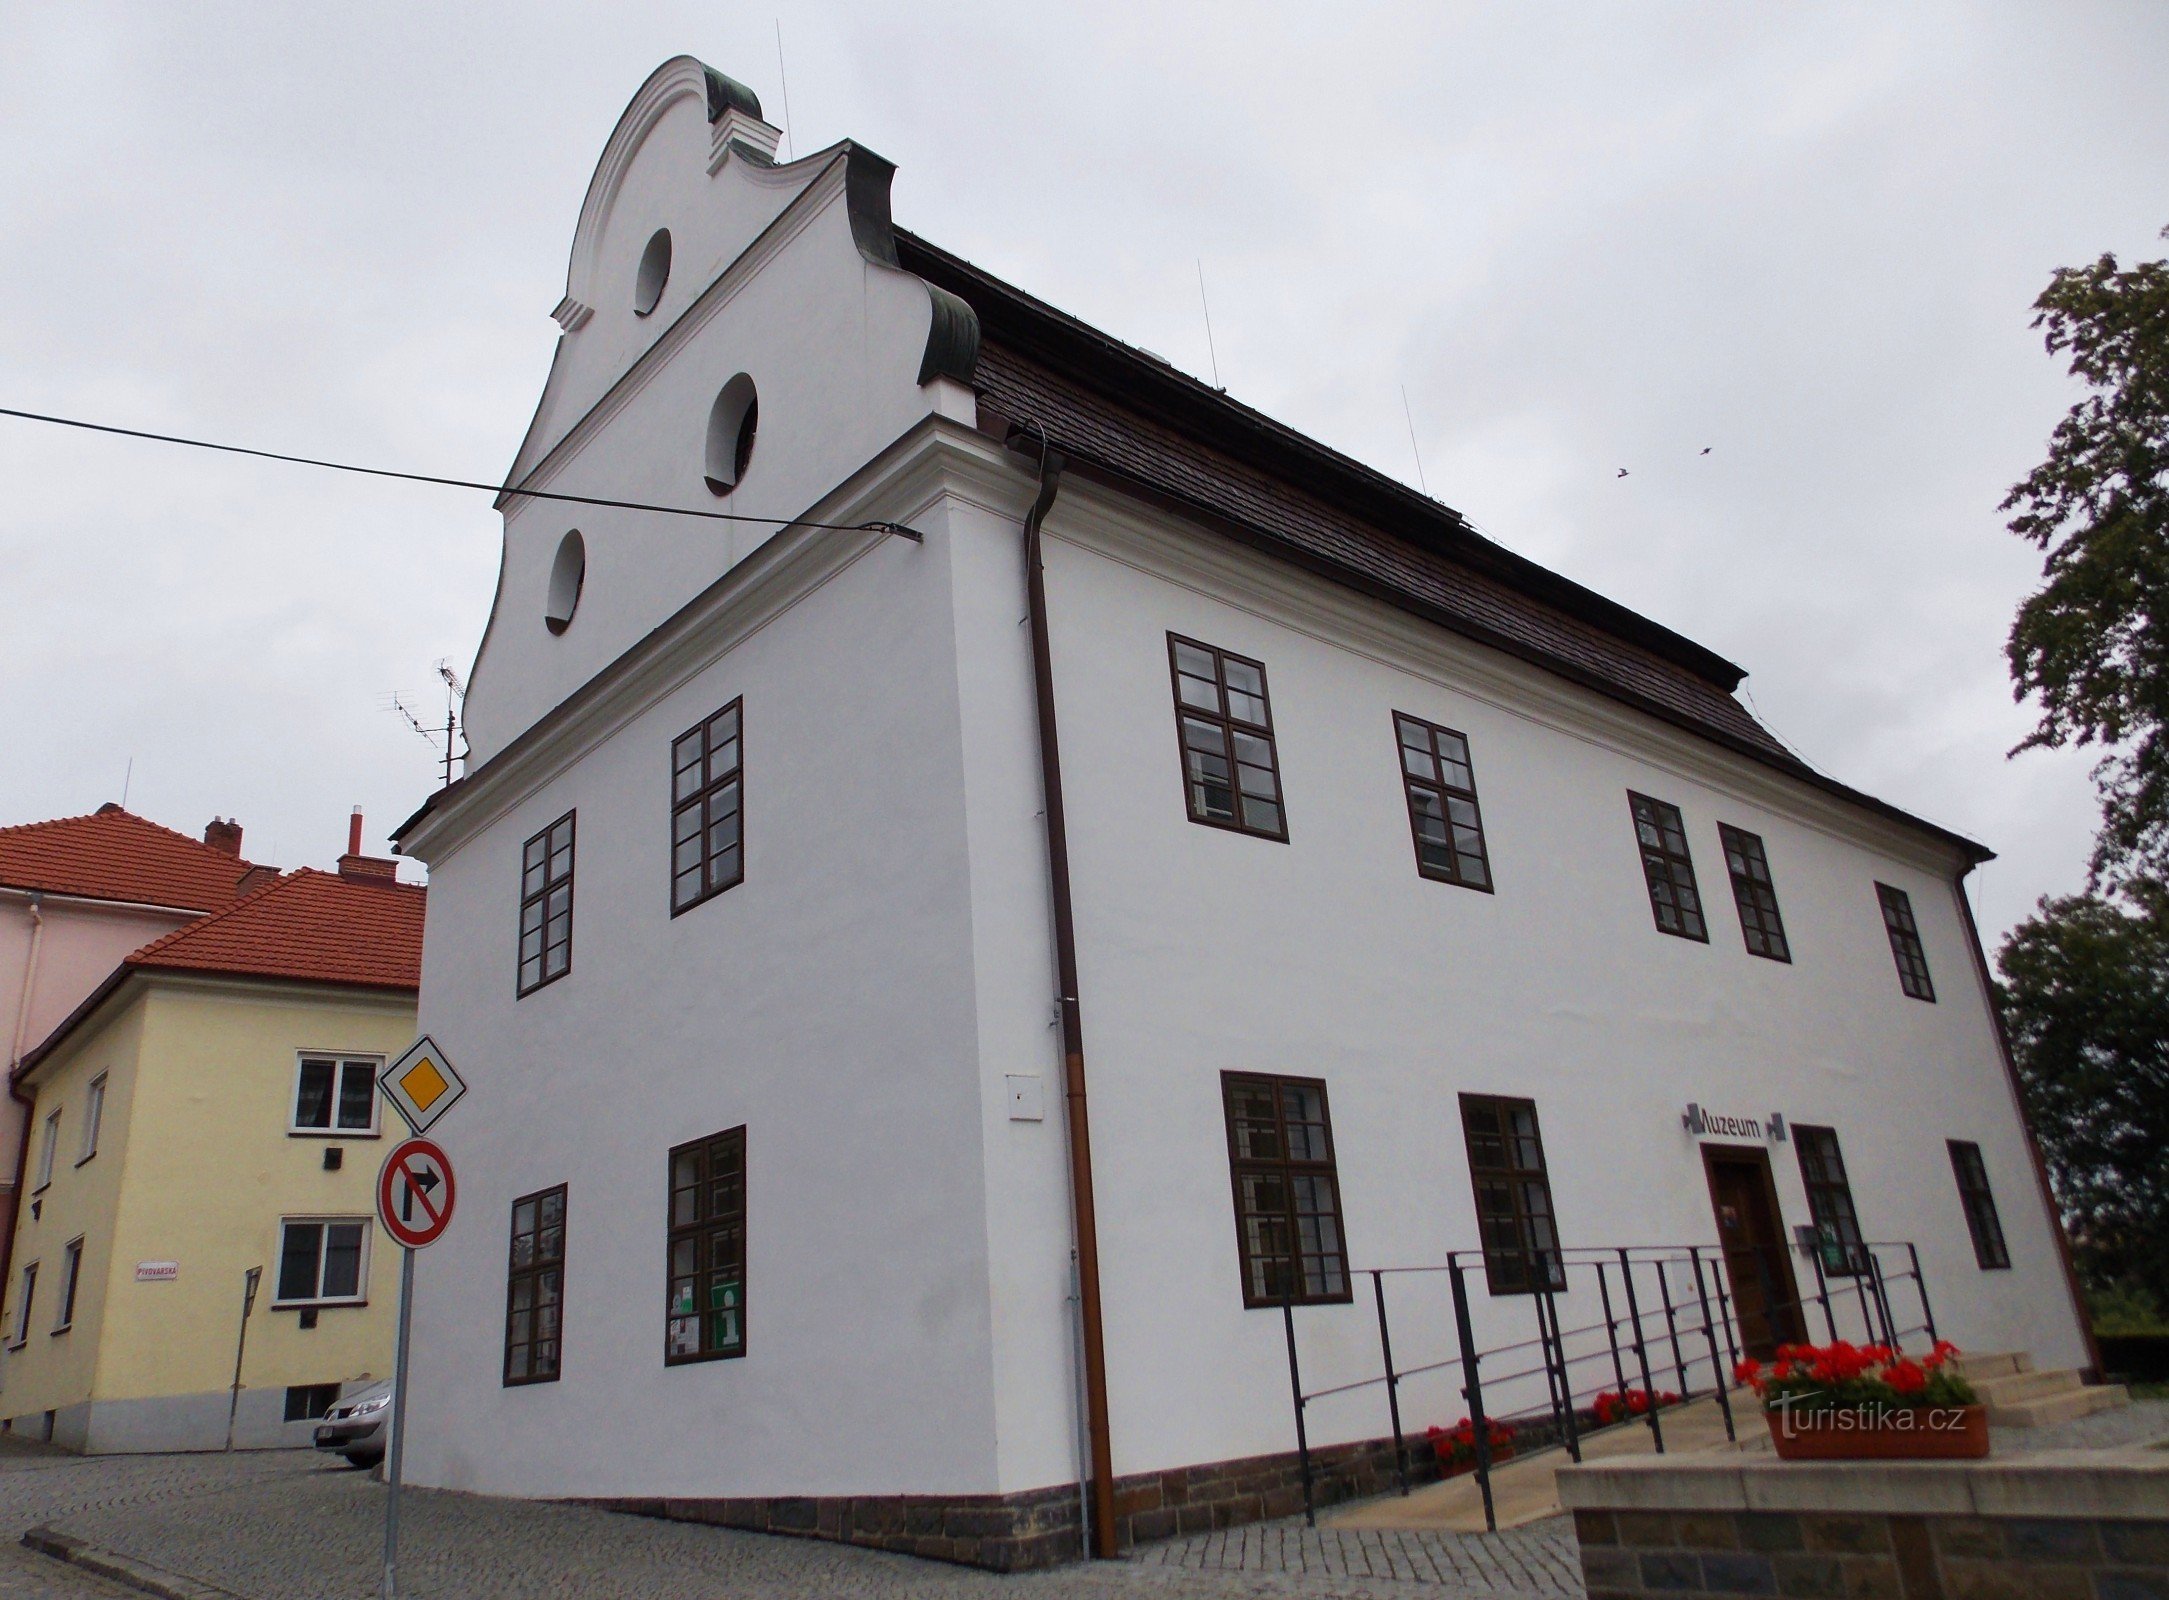 Naar het museum in Bílovec